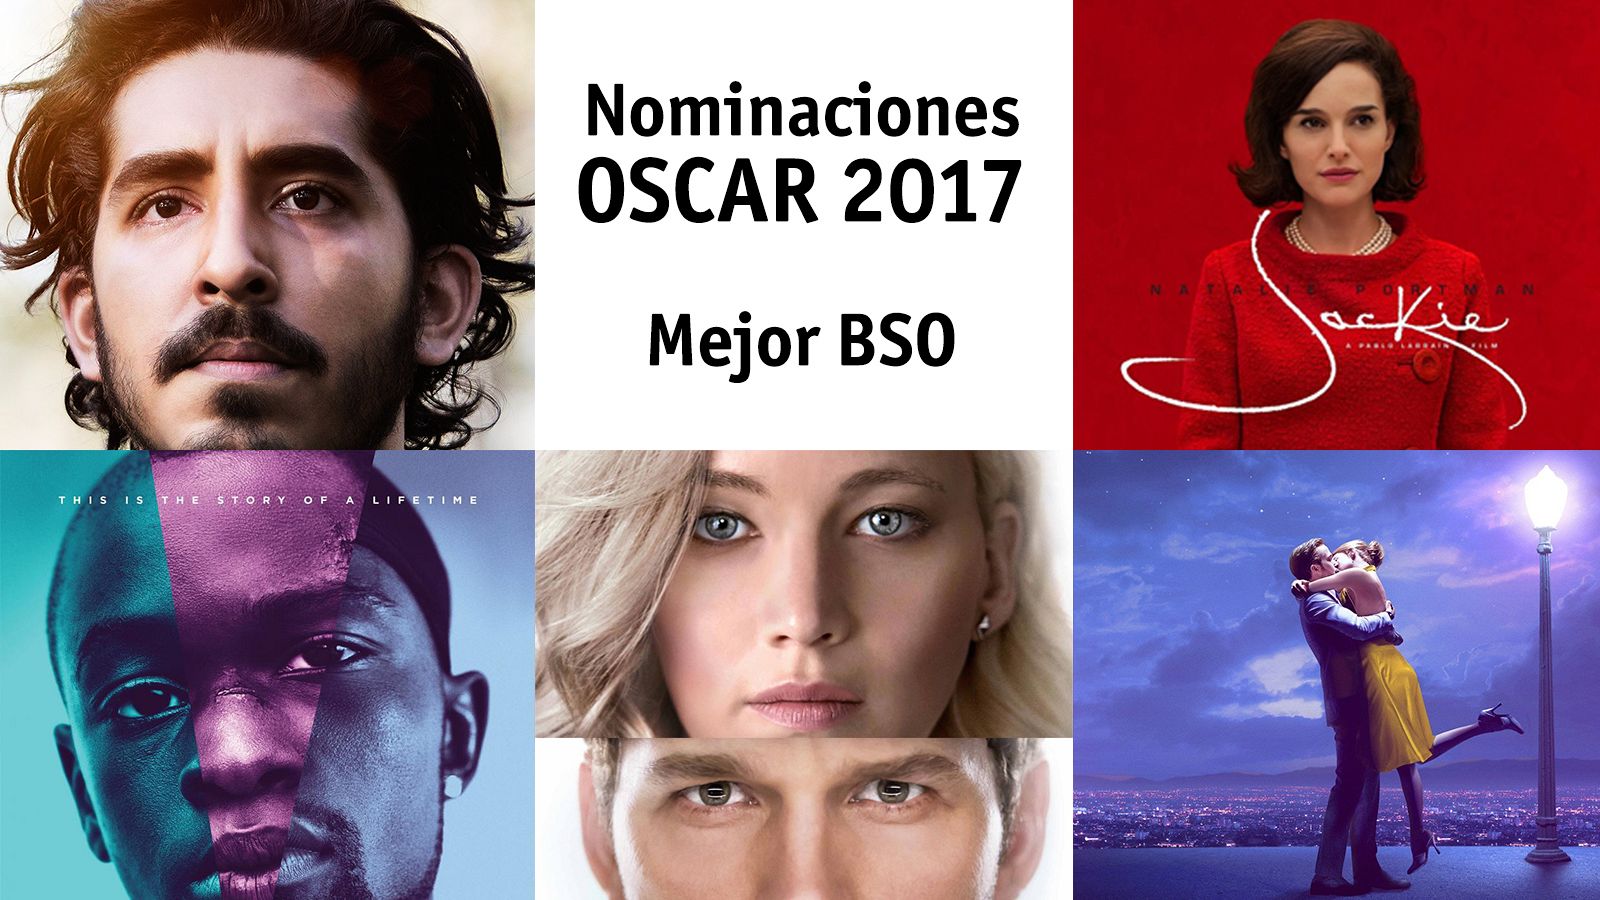 Interactivo Oscar 2017 - Nominados a Mejor Banda Sonora